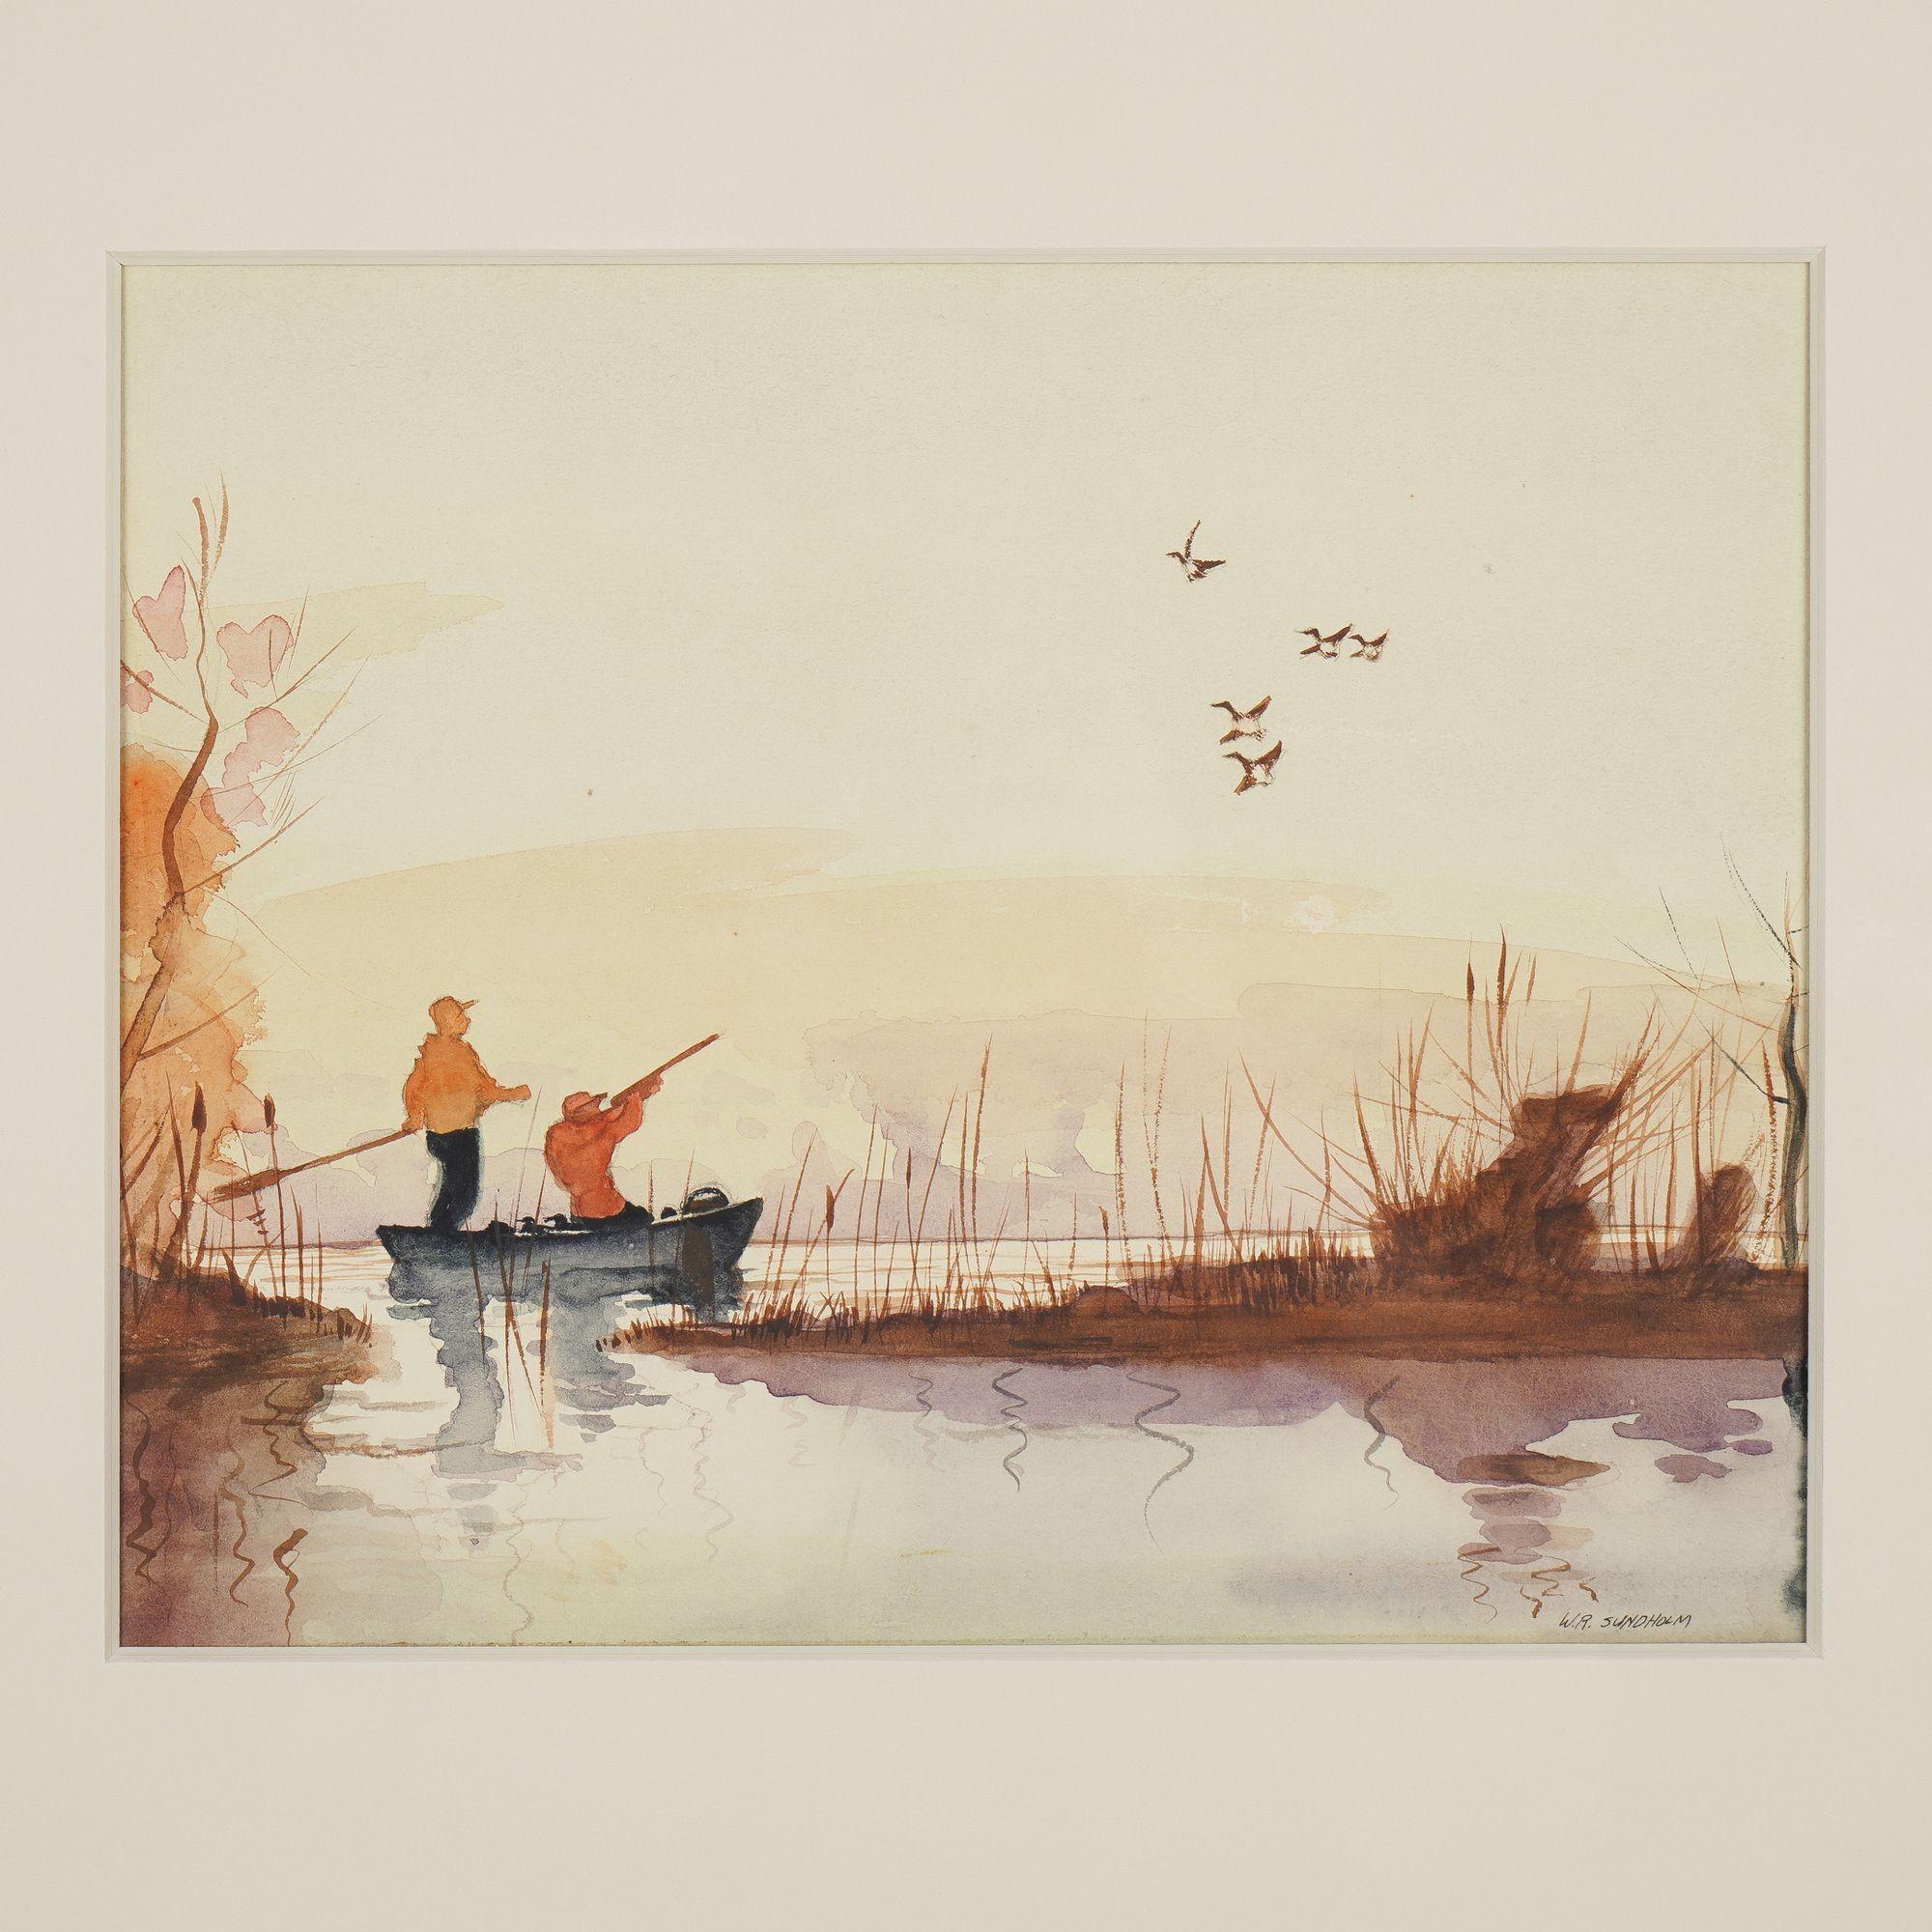 Aquarell auf Papier von zwei Entenjägern auf einem Kahn. Die Komposition zeigt ein sumpfiges Ufer im Vordergrund mit wunderschön wiedergegebenen Spiegelungen im Wasser. Im Hintergrund sehen wir Wolken oder Nebel, die aus dem Wasser aufsteigen, und